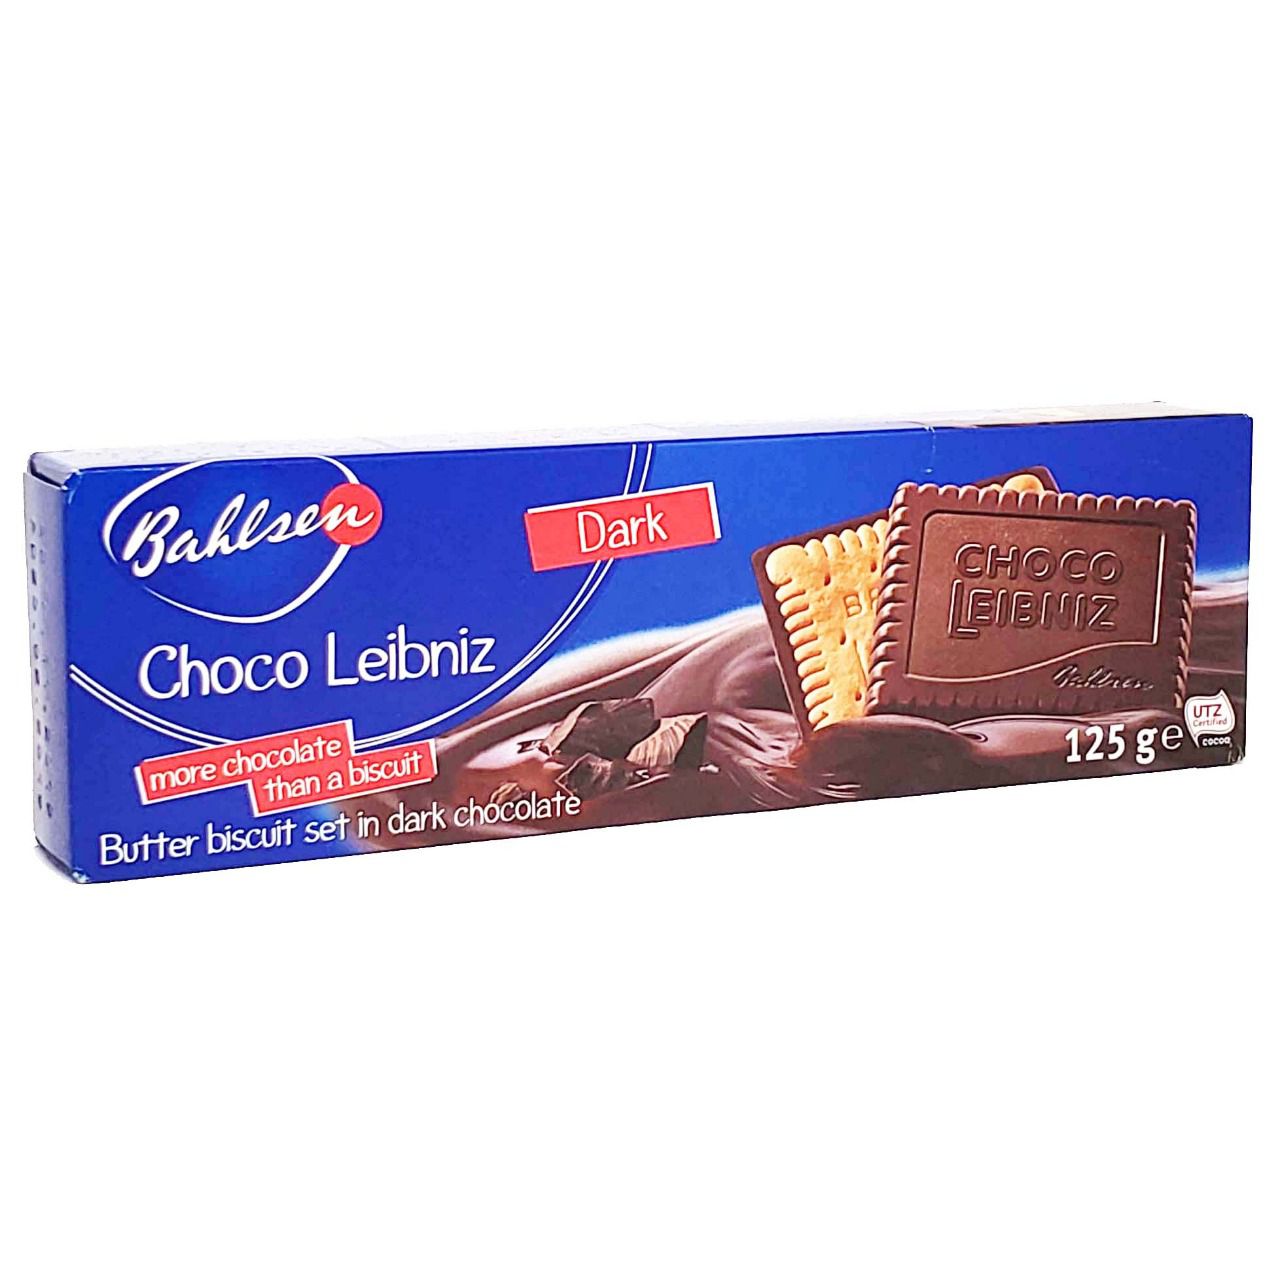 Biscoito Bahlsen Choco Leibniz Dark - 125g -